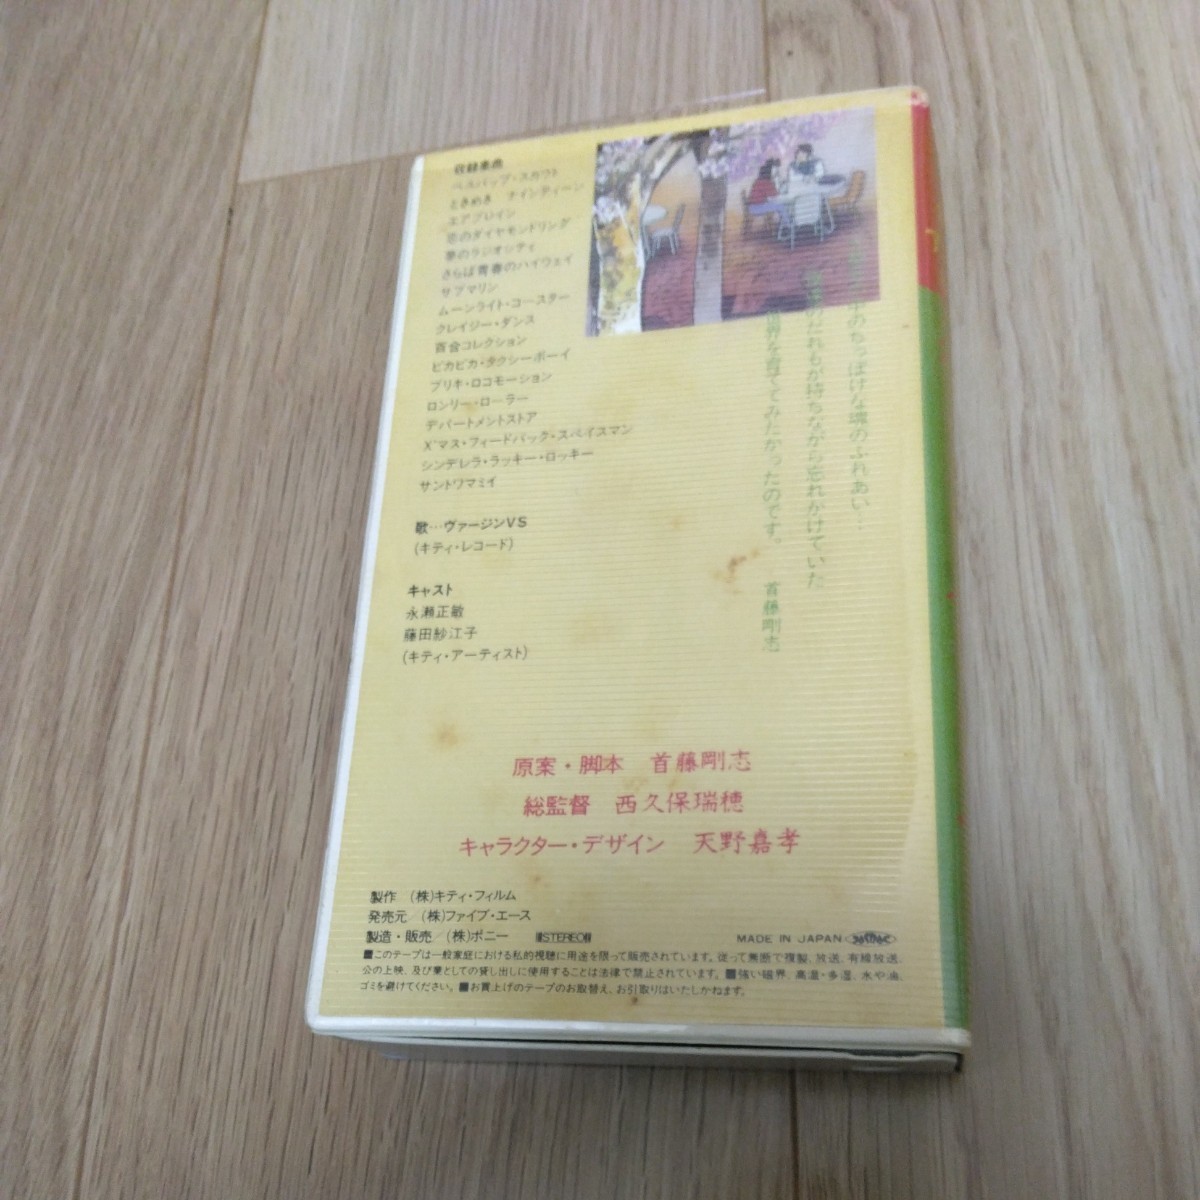 VHS видео OVA RADIO CITY FANTASY улица угол. meruhenDVD не продажа произведение аниме .. правильный . рисовое поле ... шея глициния Gou .1984 год продажа рабочее состояние подтверждено 